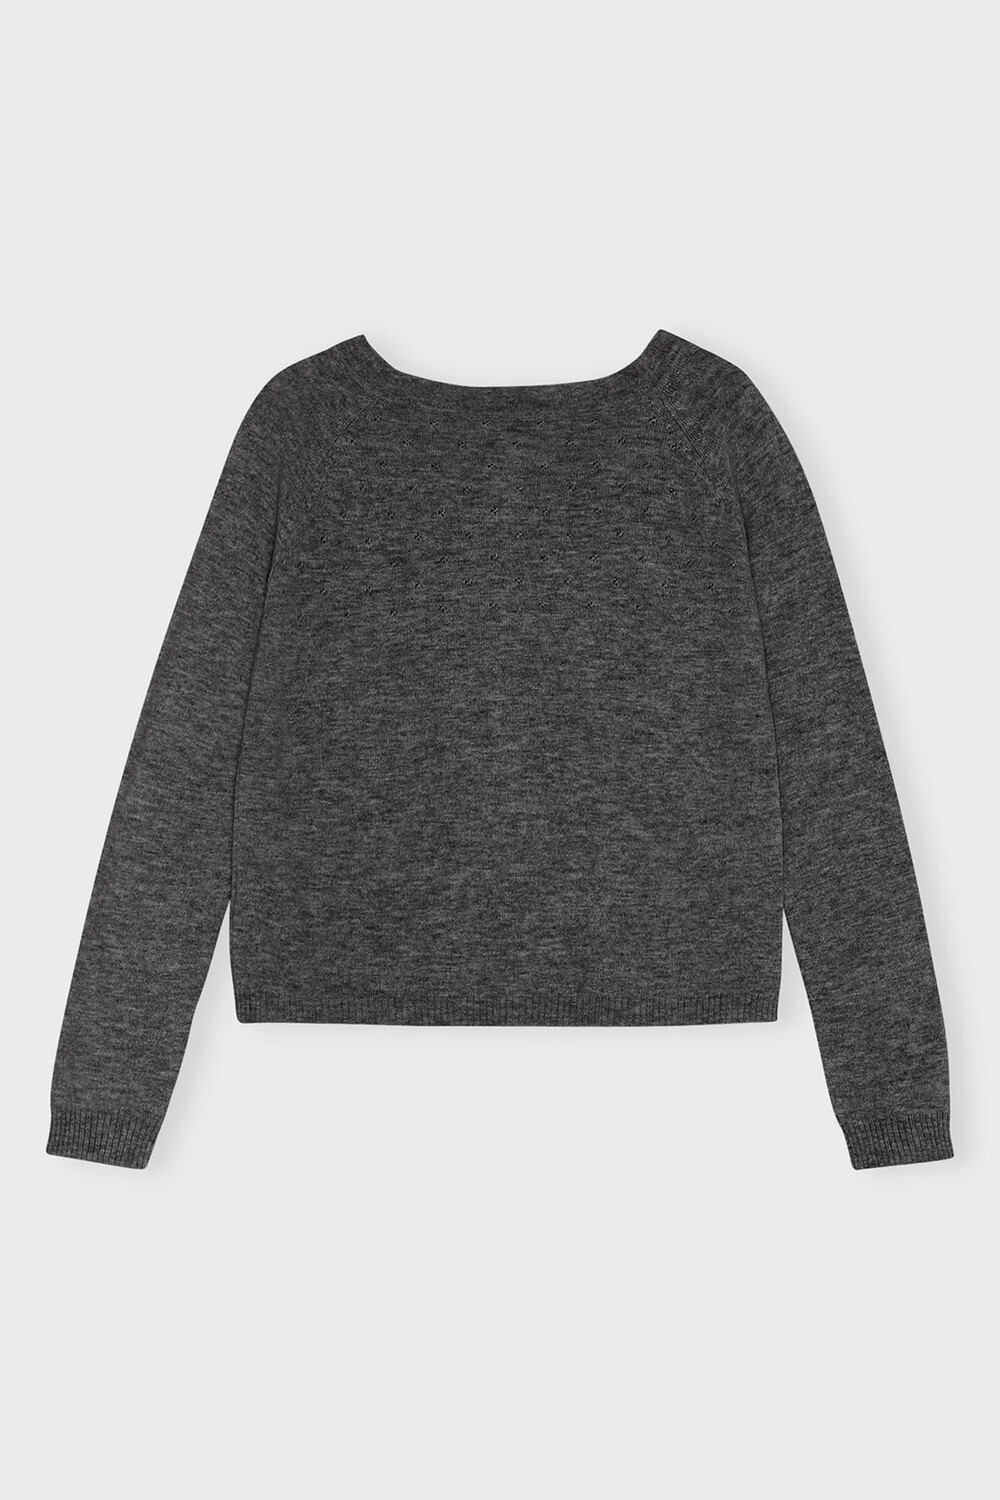 JOY Sweater, dark grey